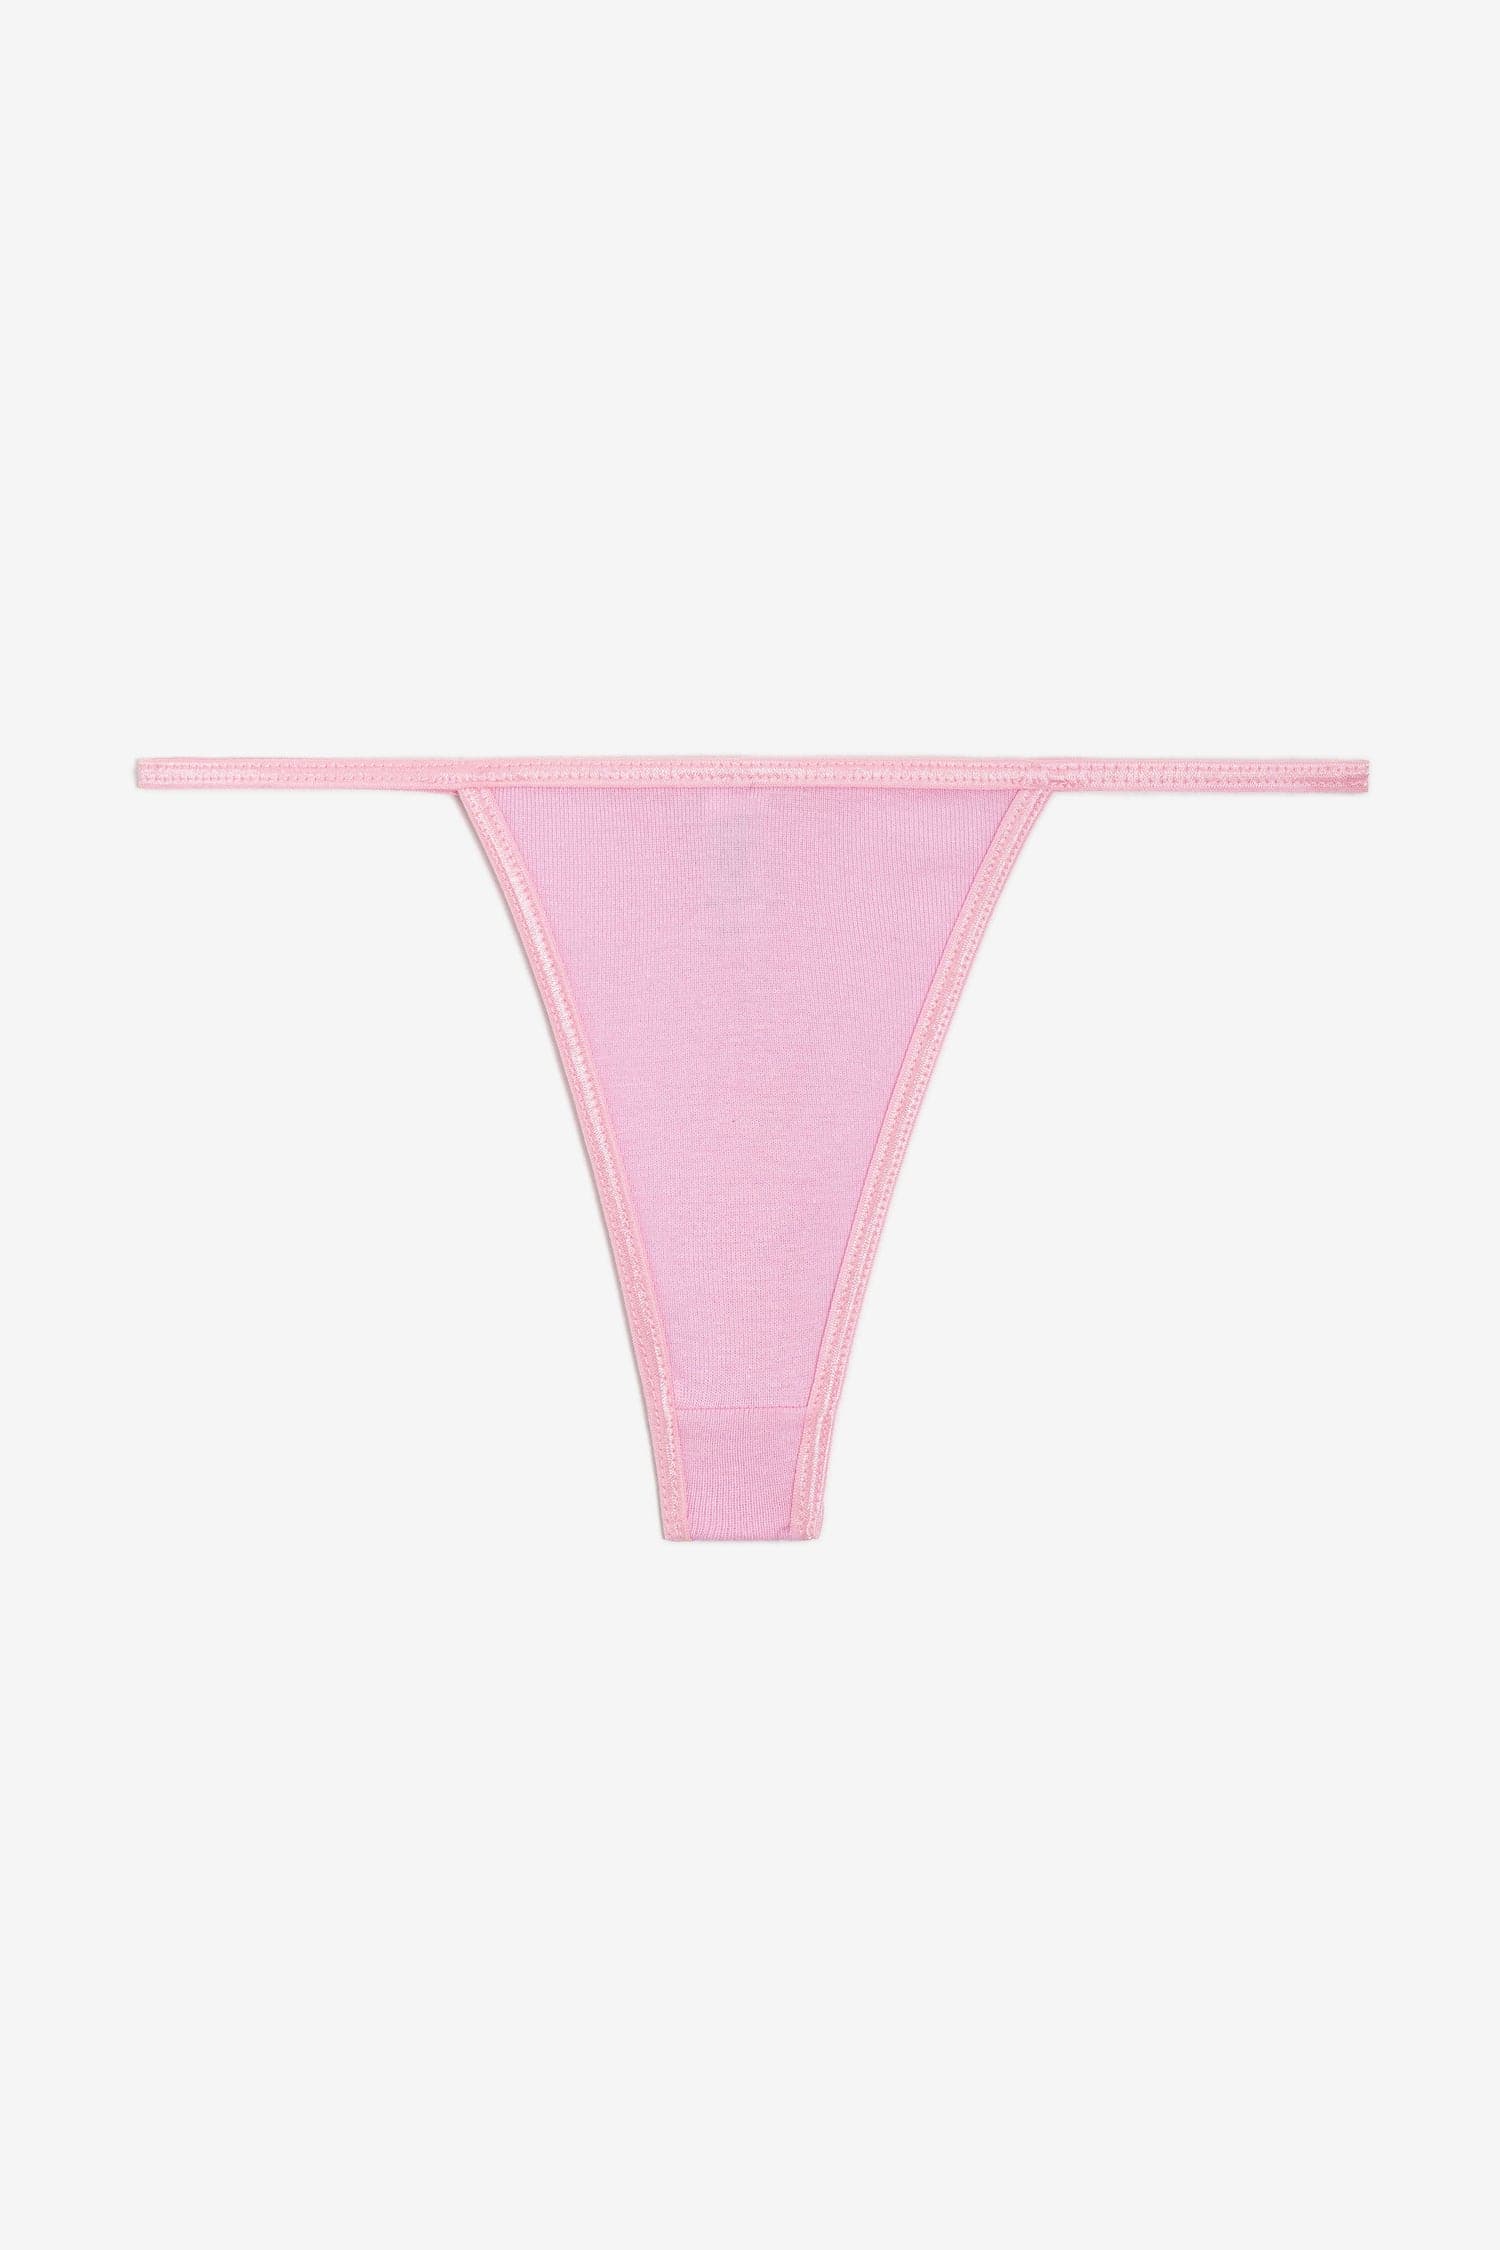 PINK Victoria's Secret, Pants & Jumpsuits, Nwt Victorias Secret Pink Tie  Dye High Waist Leggings